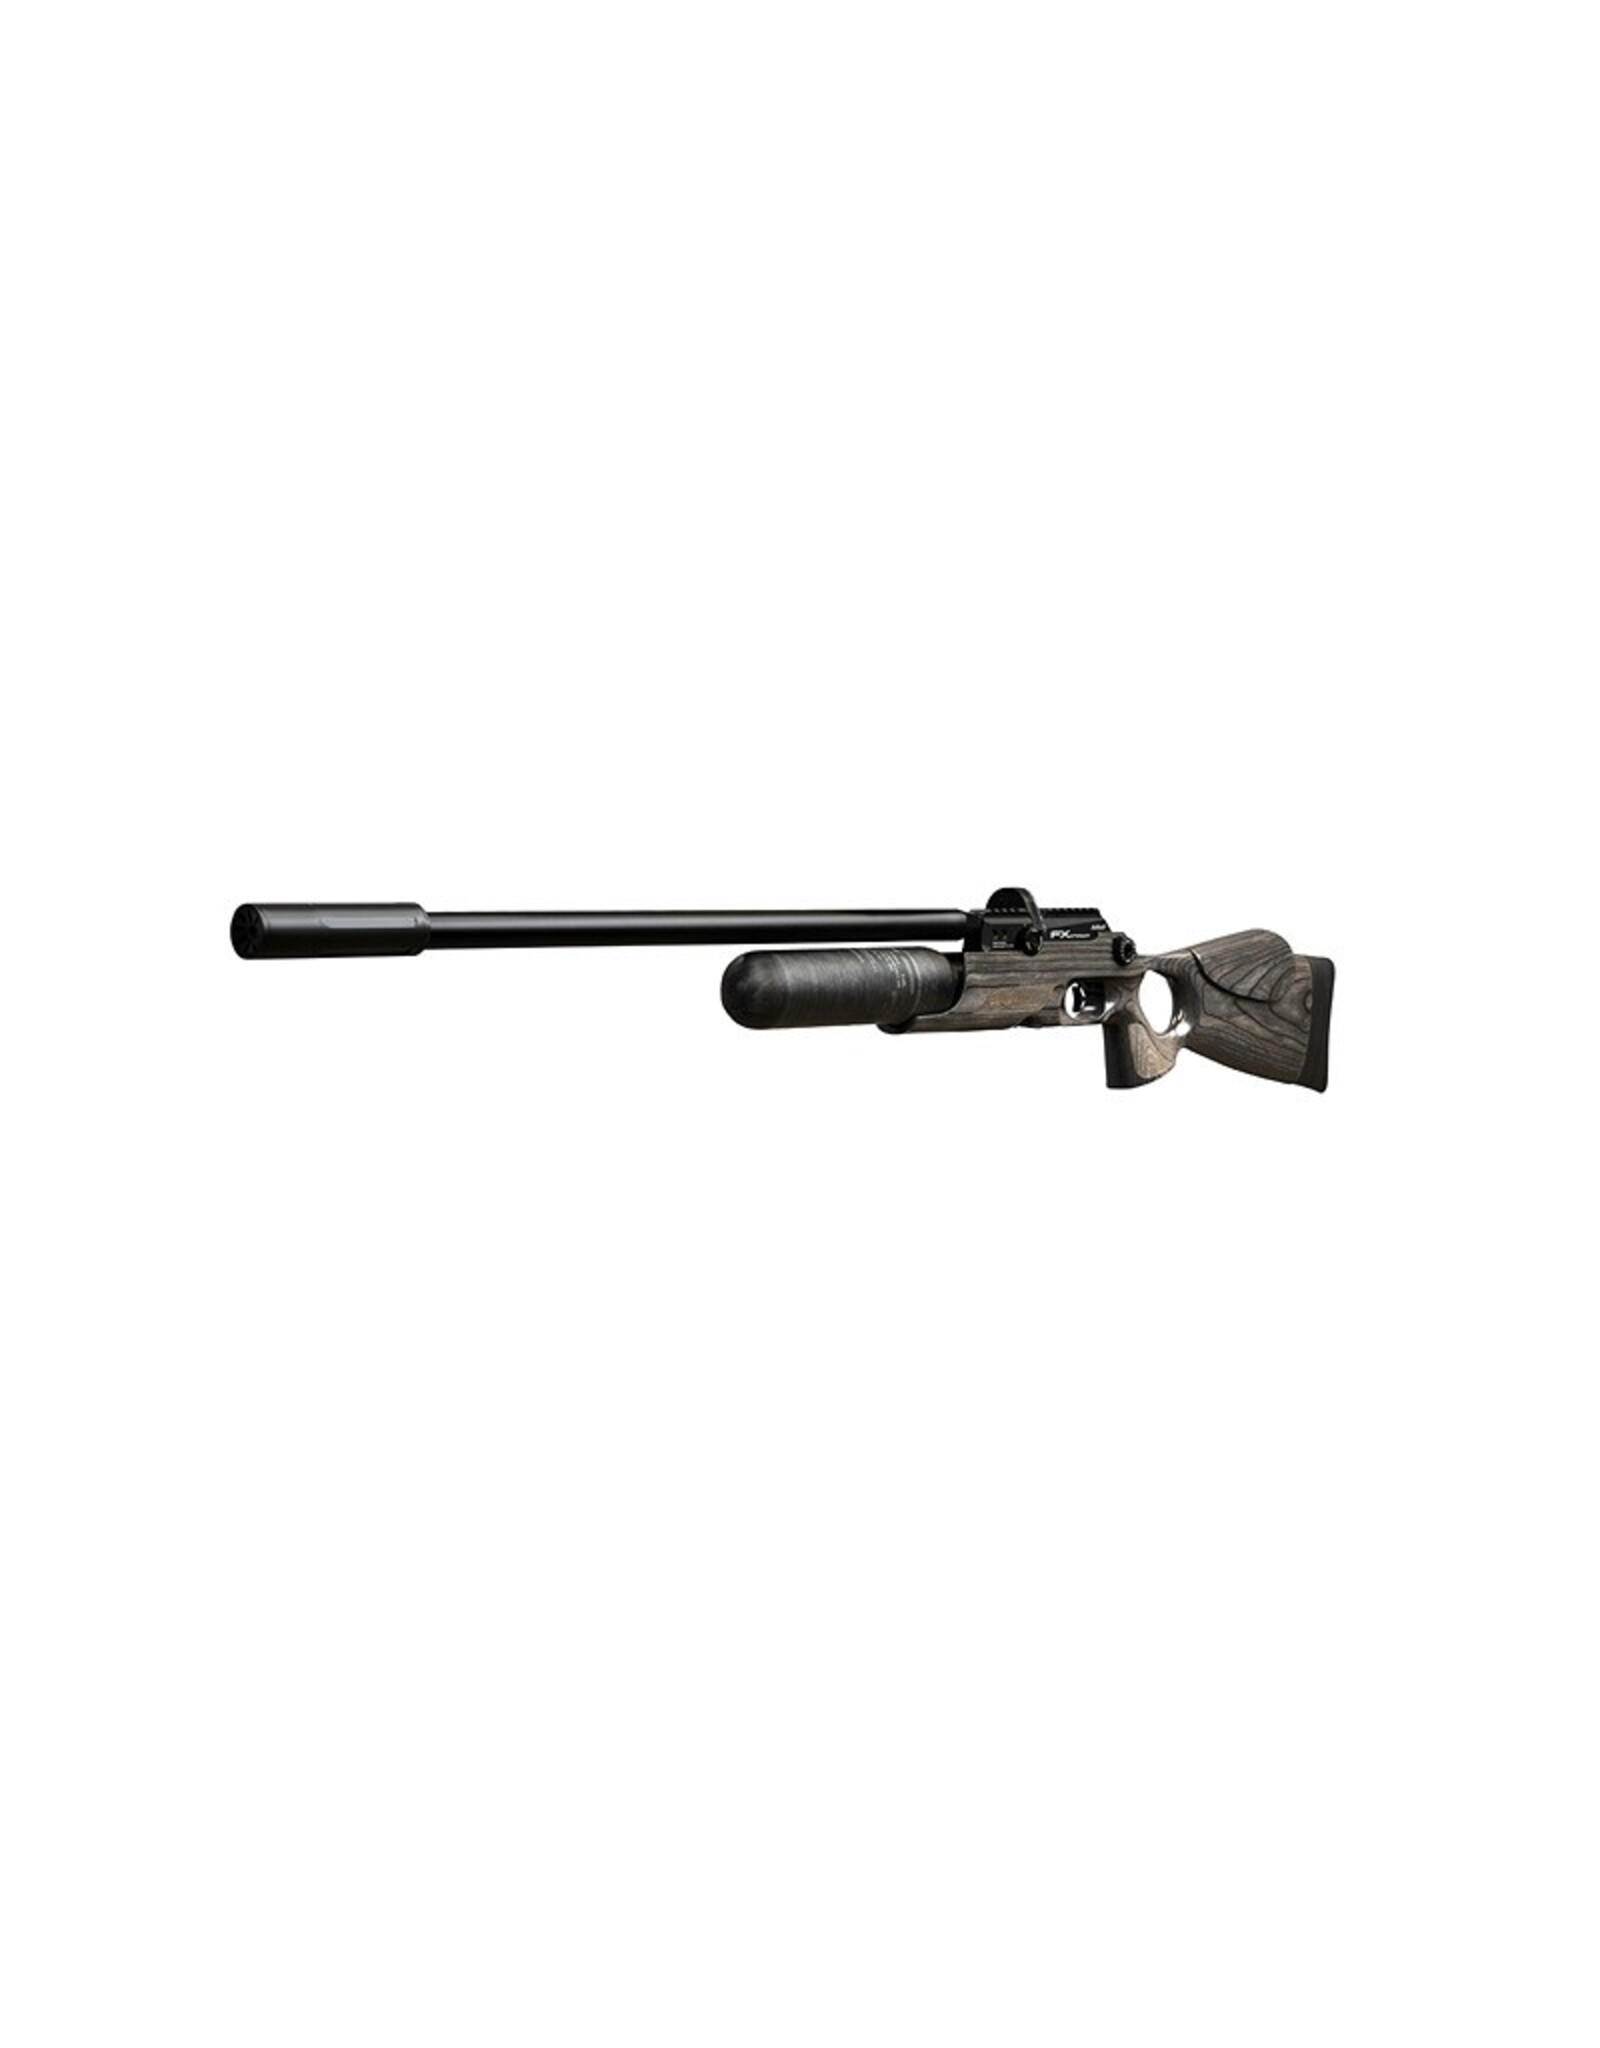 FX Airguns FX Crown MKII Standard, Black Pepper Laminate  - 0.22 caliber